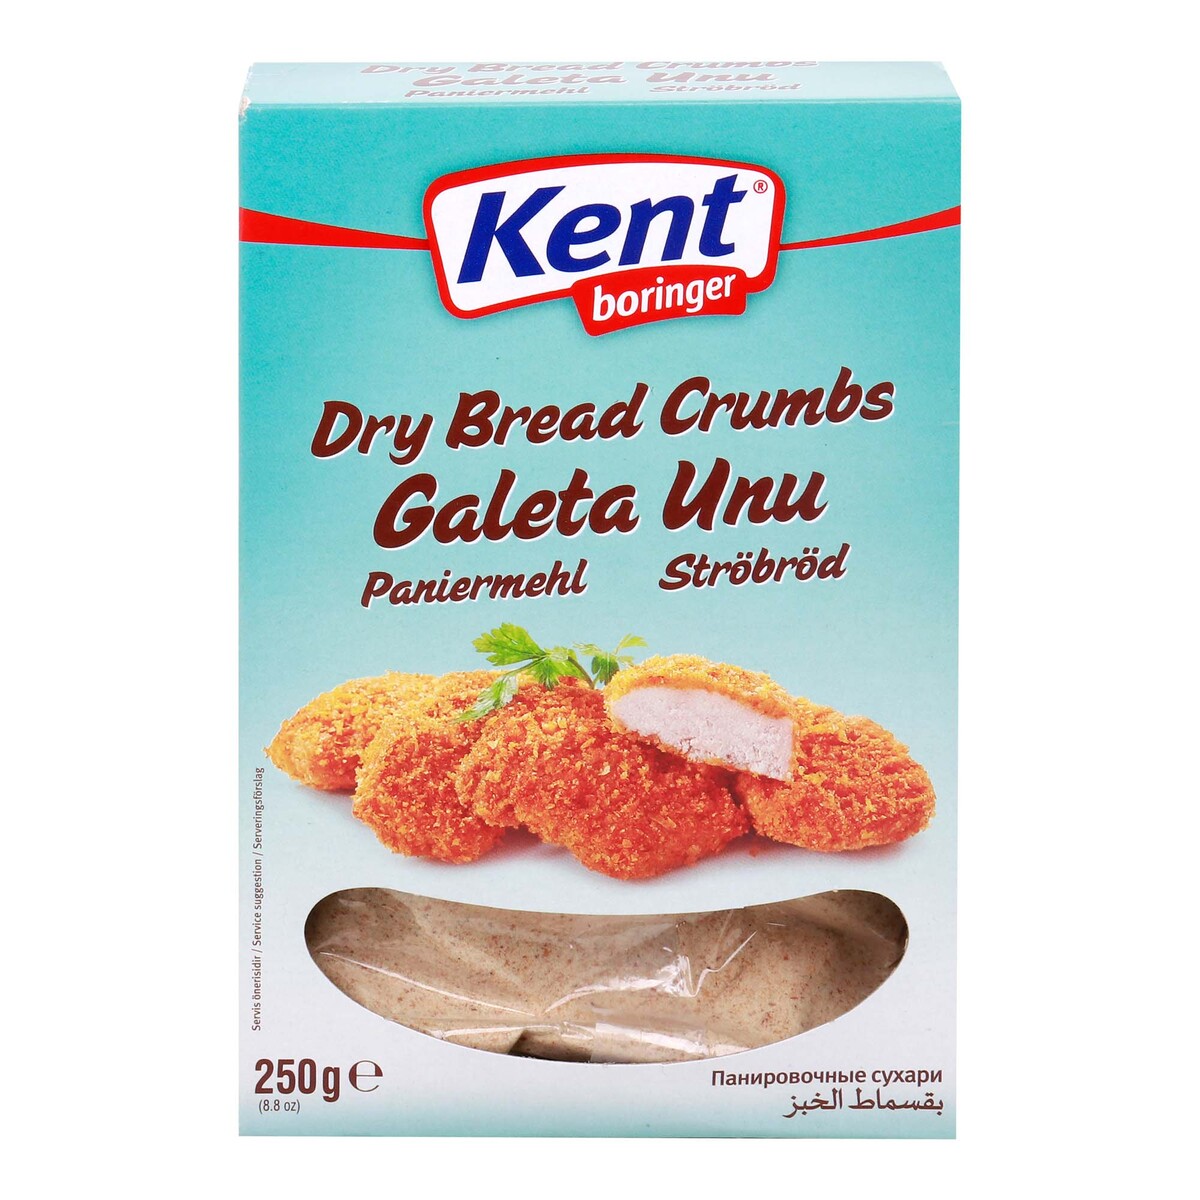 Kent Boringer Dry Bread Crumbs 250 g